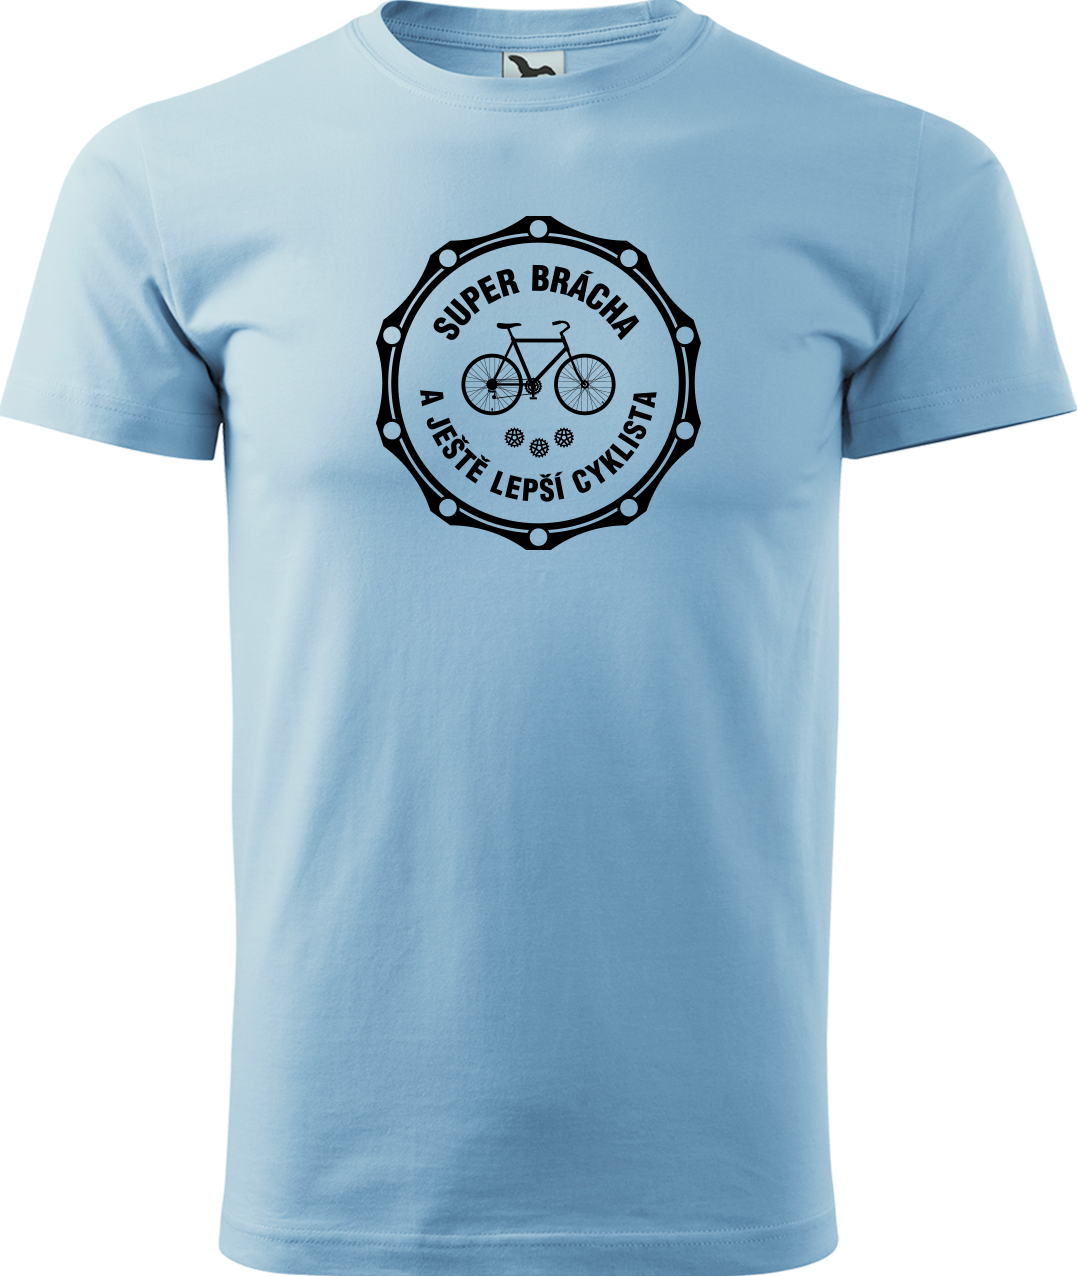 Pánské tričko pro cyklistu - Super brácha a ještě lepší cyklista Velikost: S, Barva: Nebesky modrá (15)